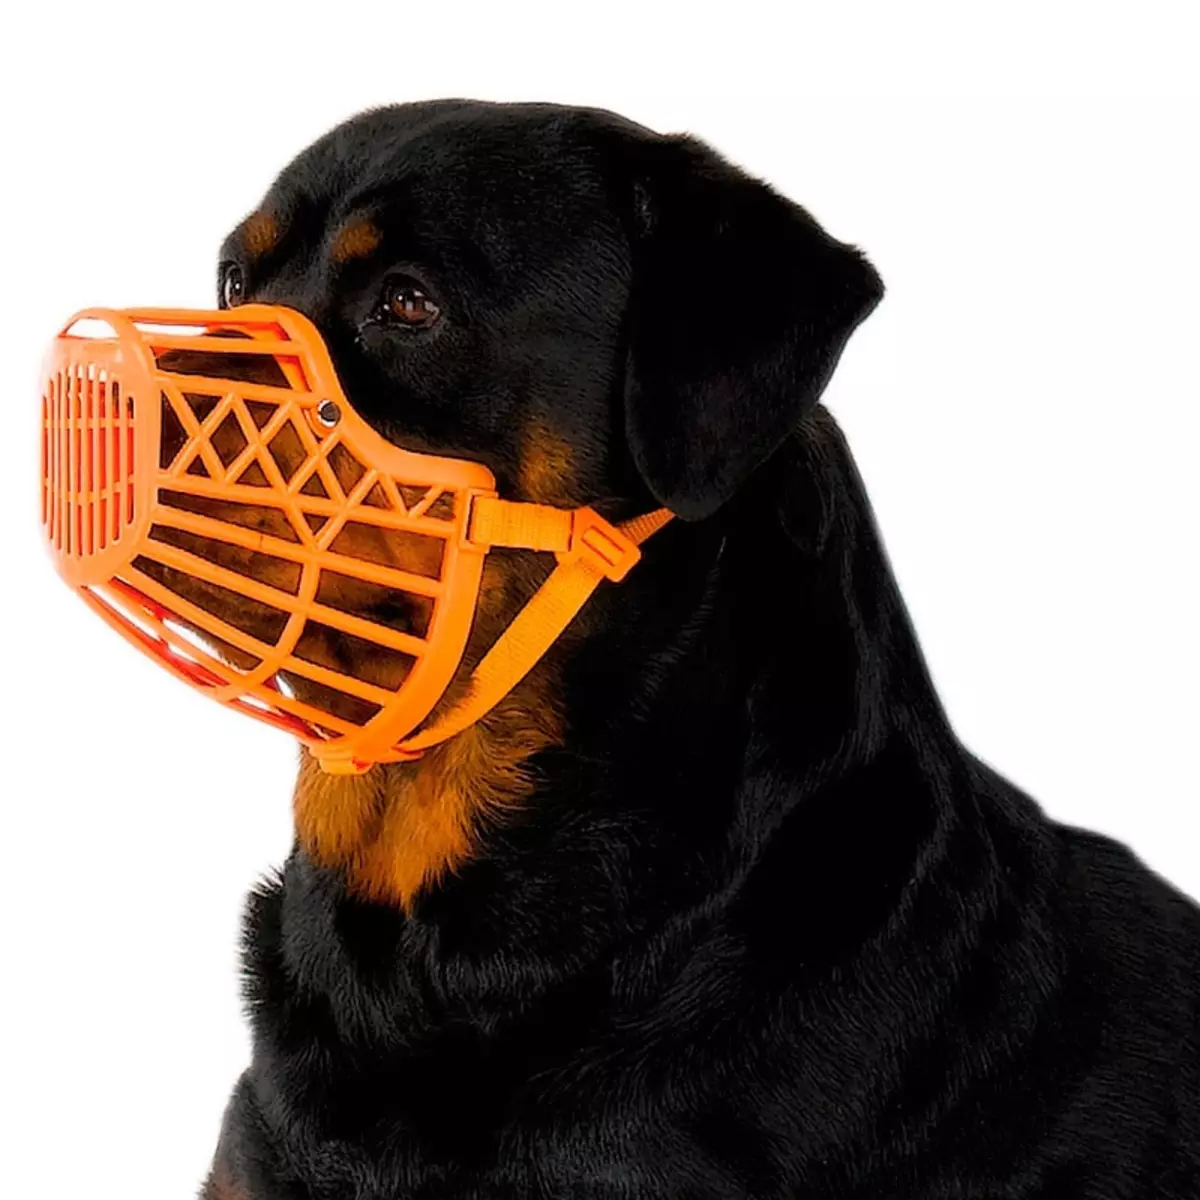 Næse til hunde (23 billeder): kølige og frygtelige muzzles med tænder. Muzzles til små og store hunde. Hvordan vælger du dem i størrelse? 12357_11